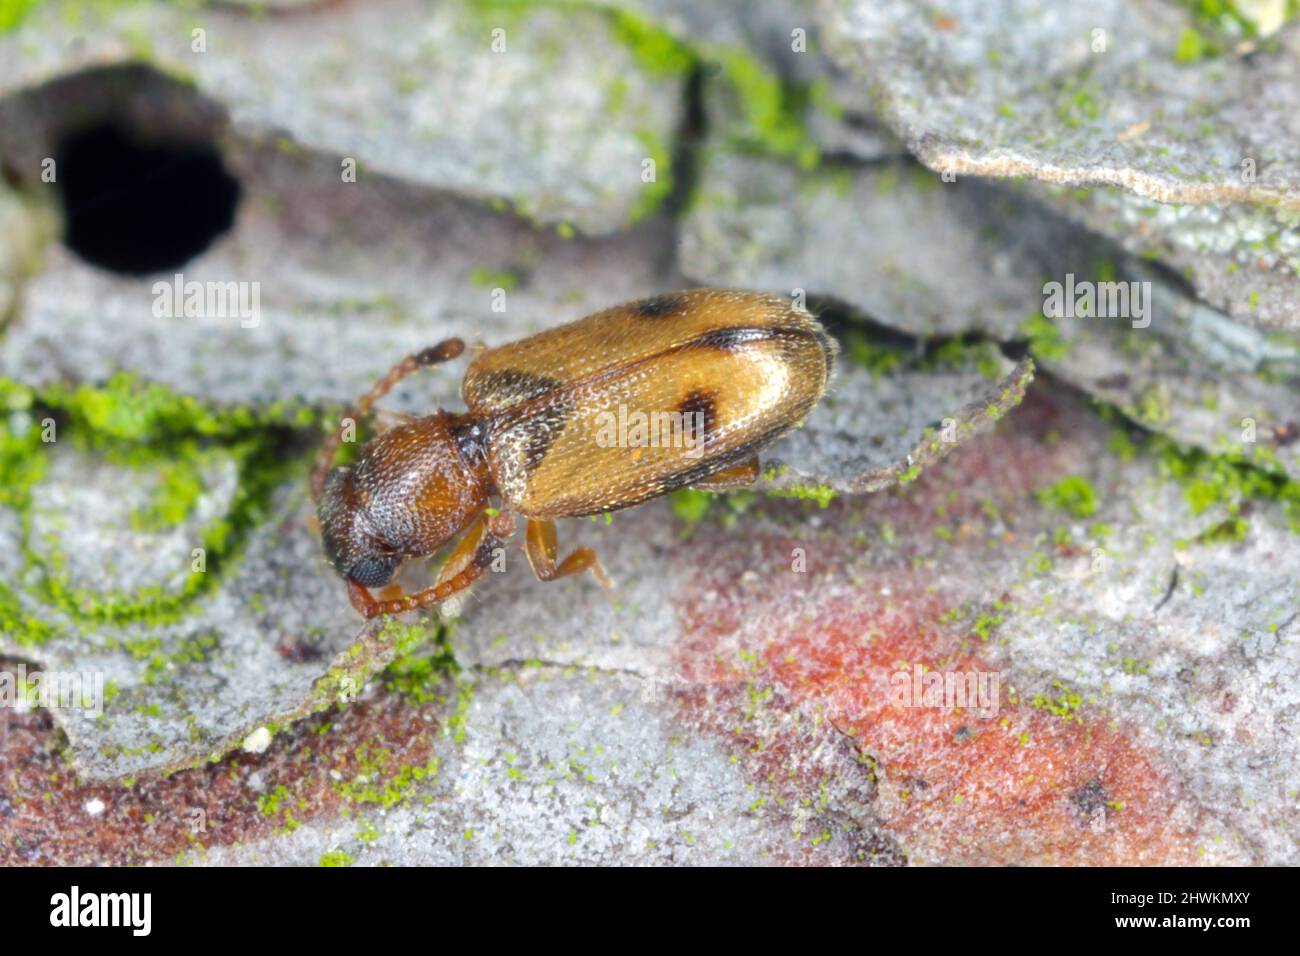 Silvan flat bark beetle, Psammoecus bipunctatus on bark Stock Photo